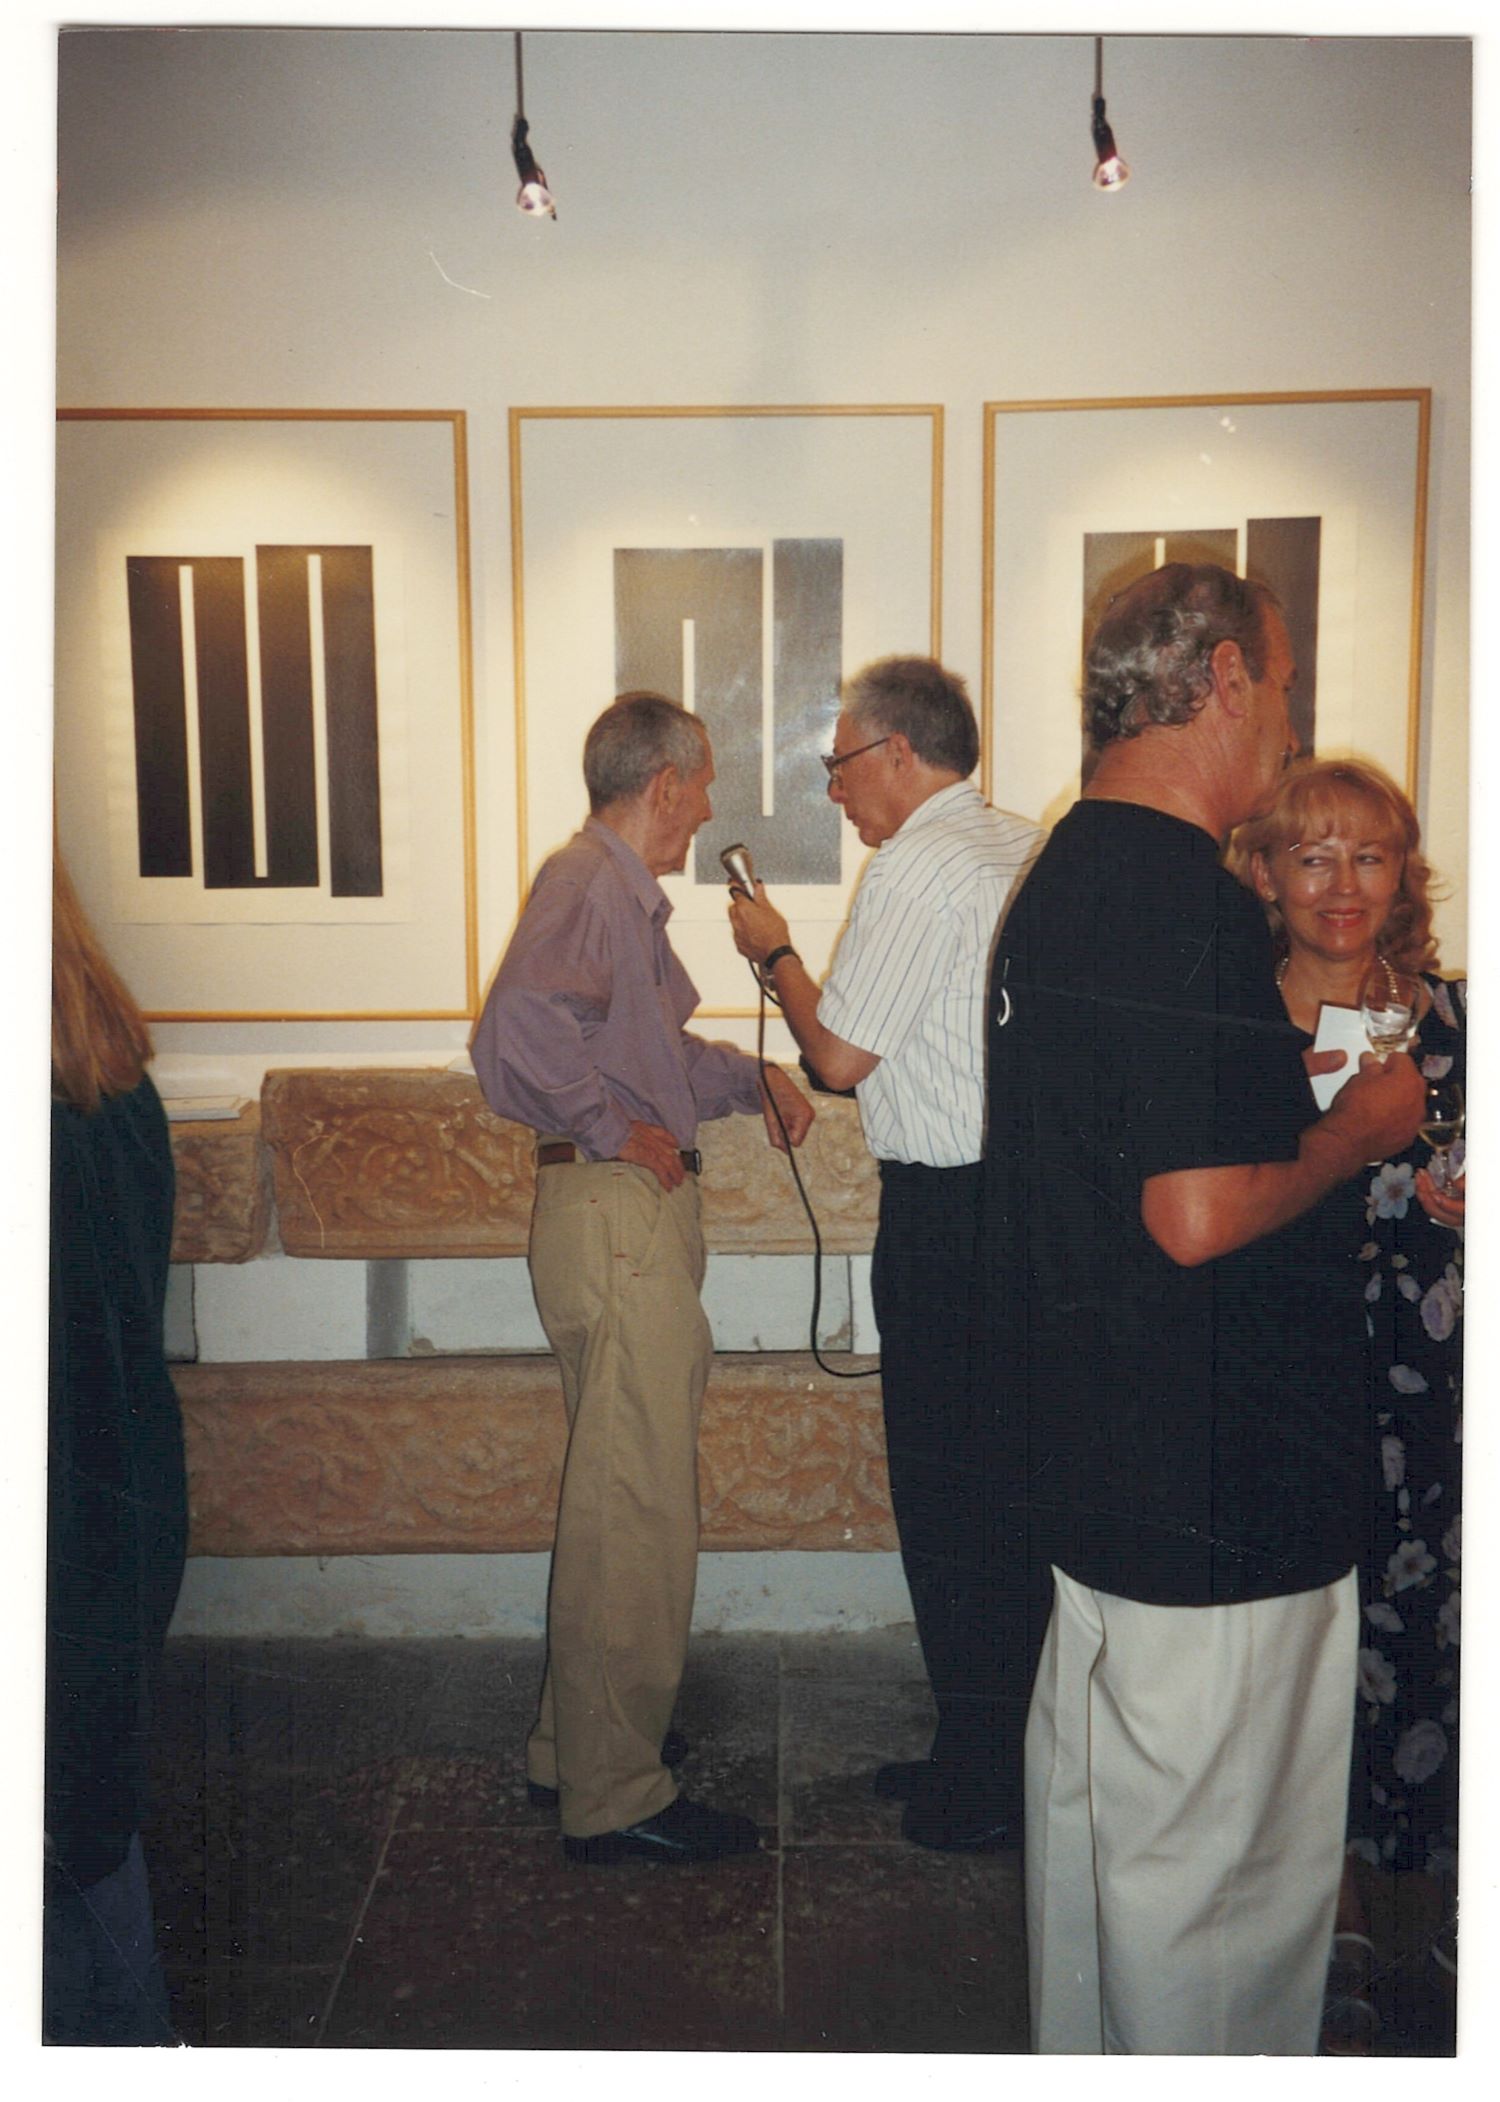 1. F-651997, J. Knifer u Galeriji Rigo 1997.